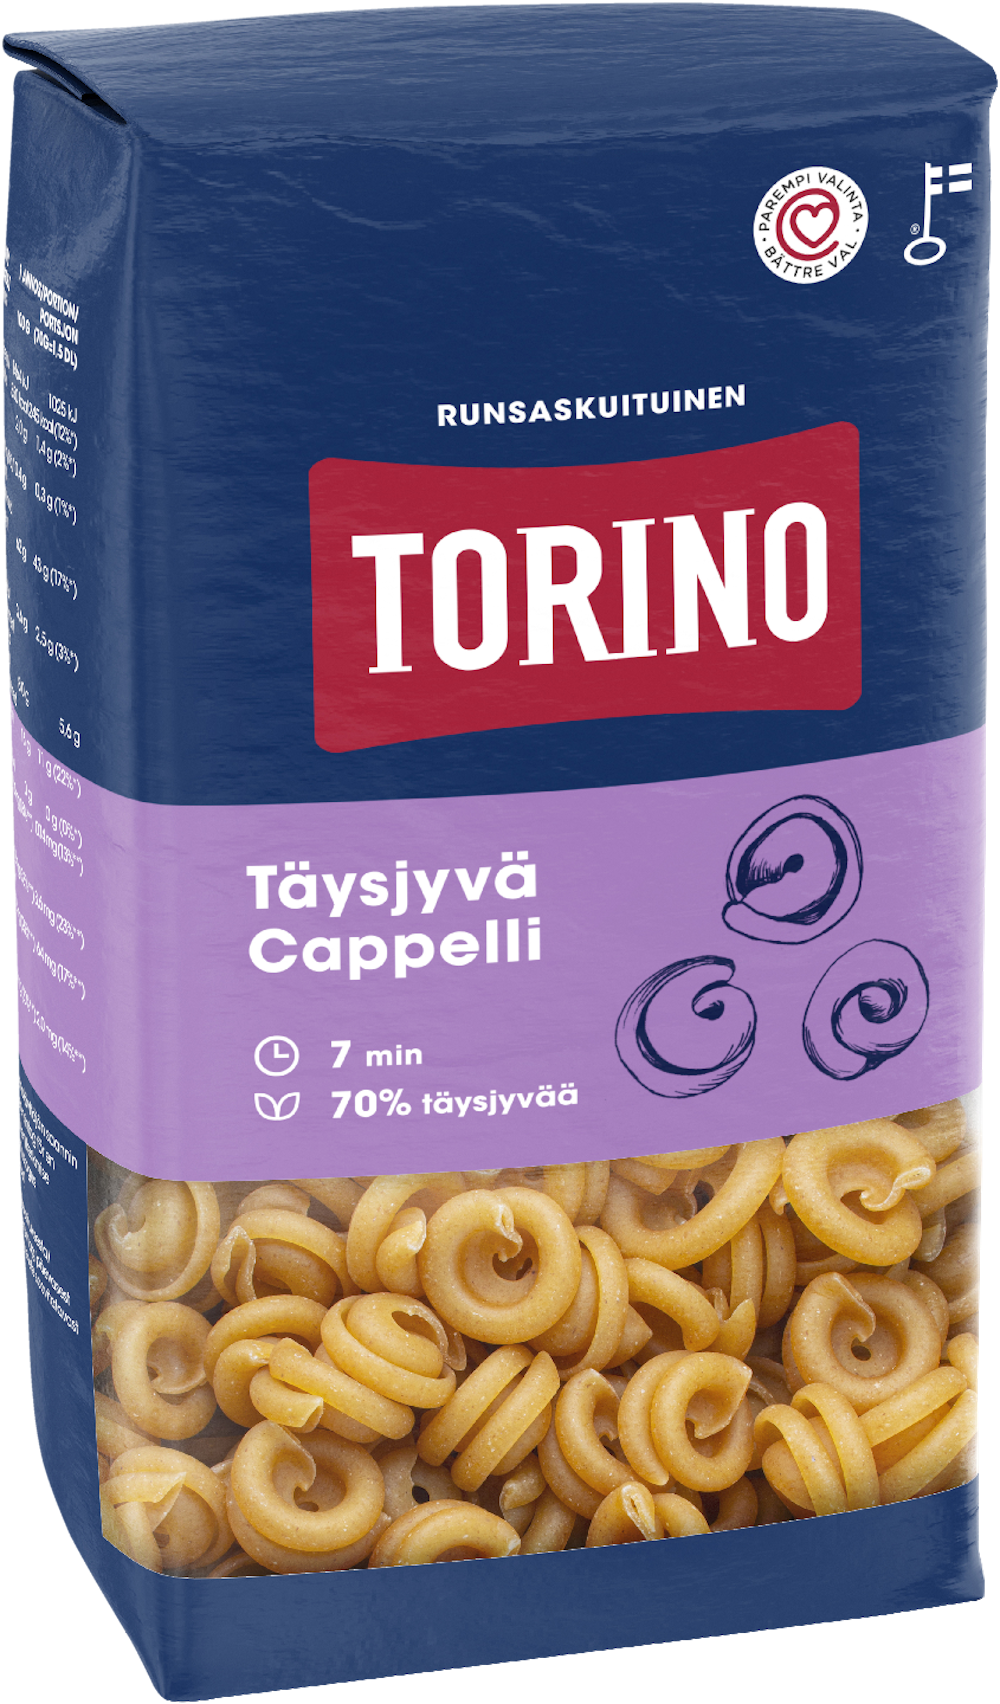 Torino täysjyvä cappelli pasta 500 g — HoReCa-tukku Kespro